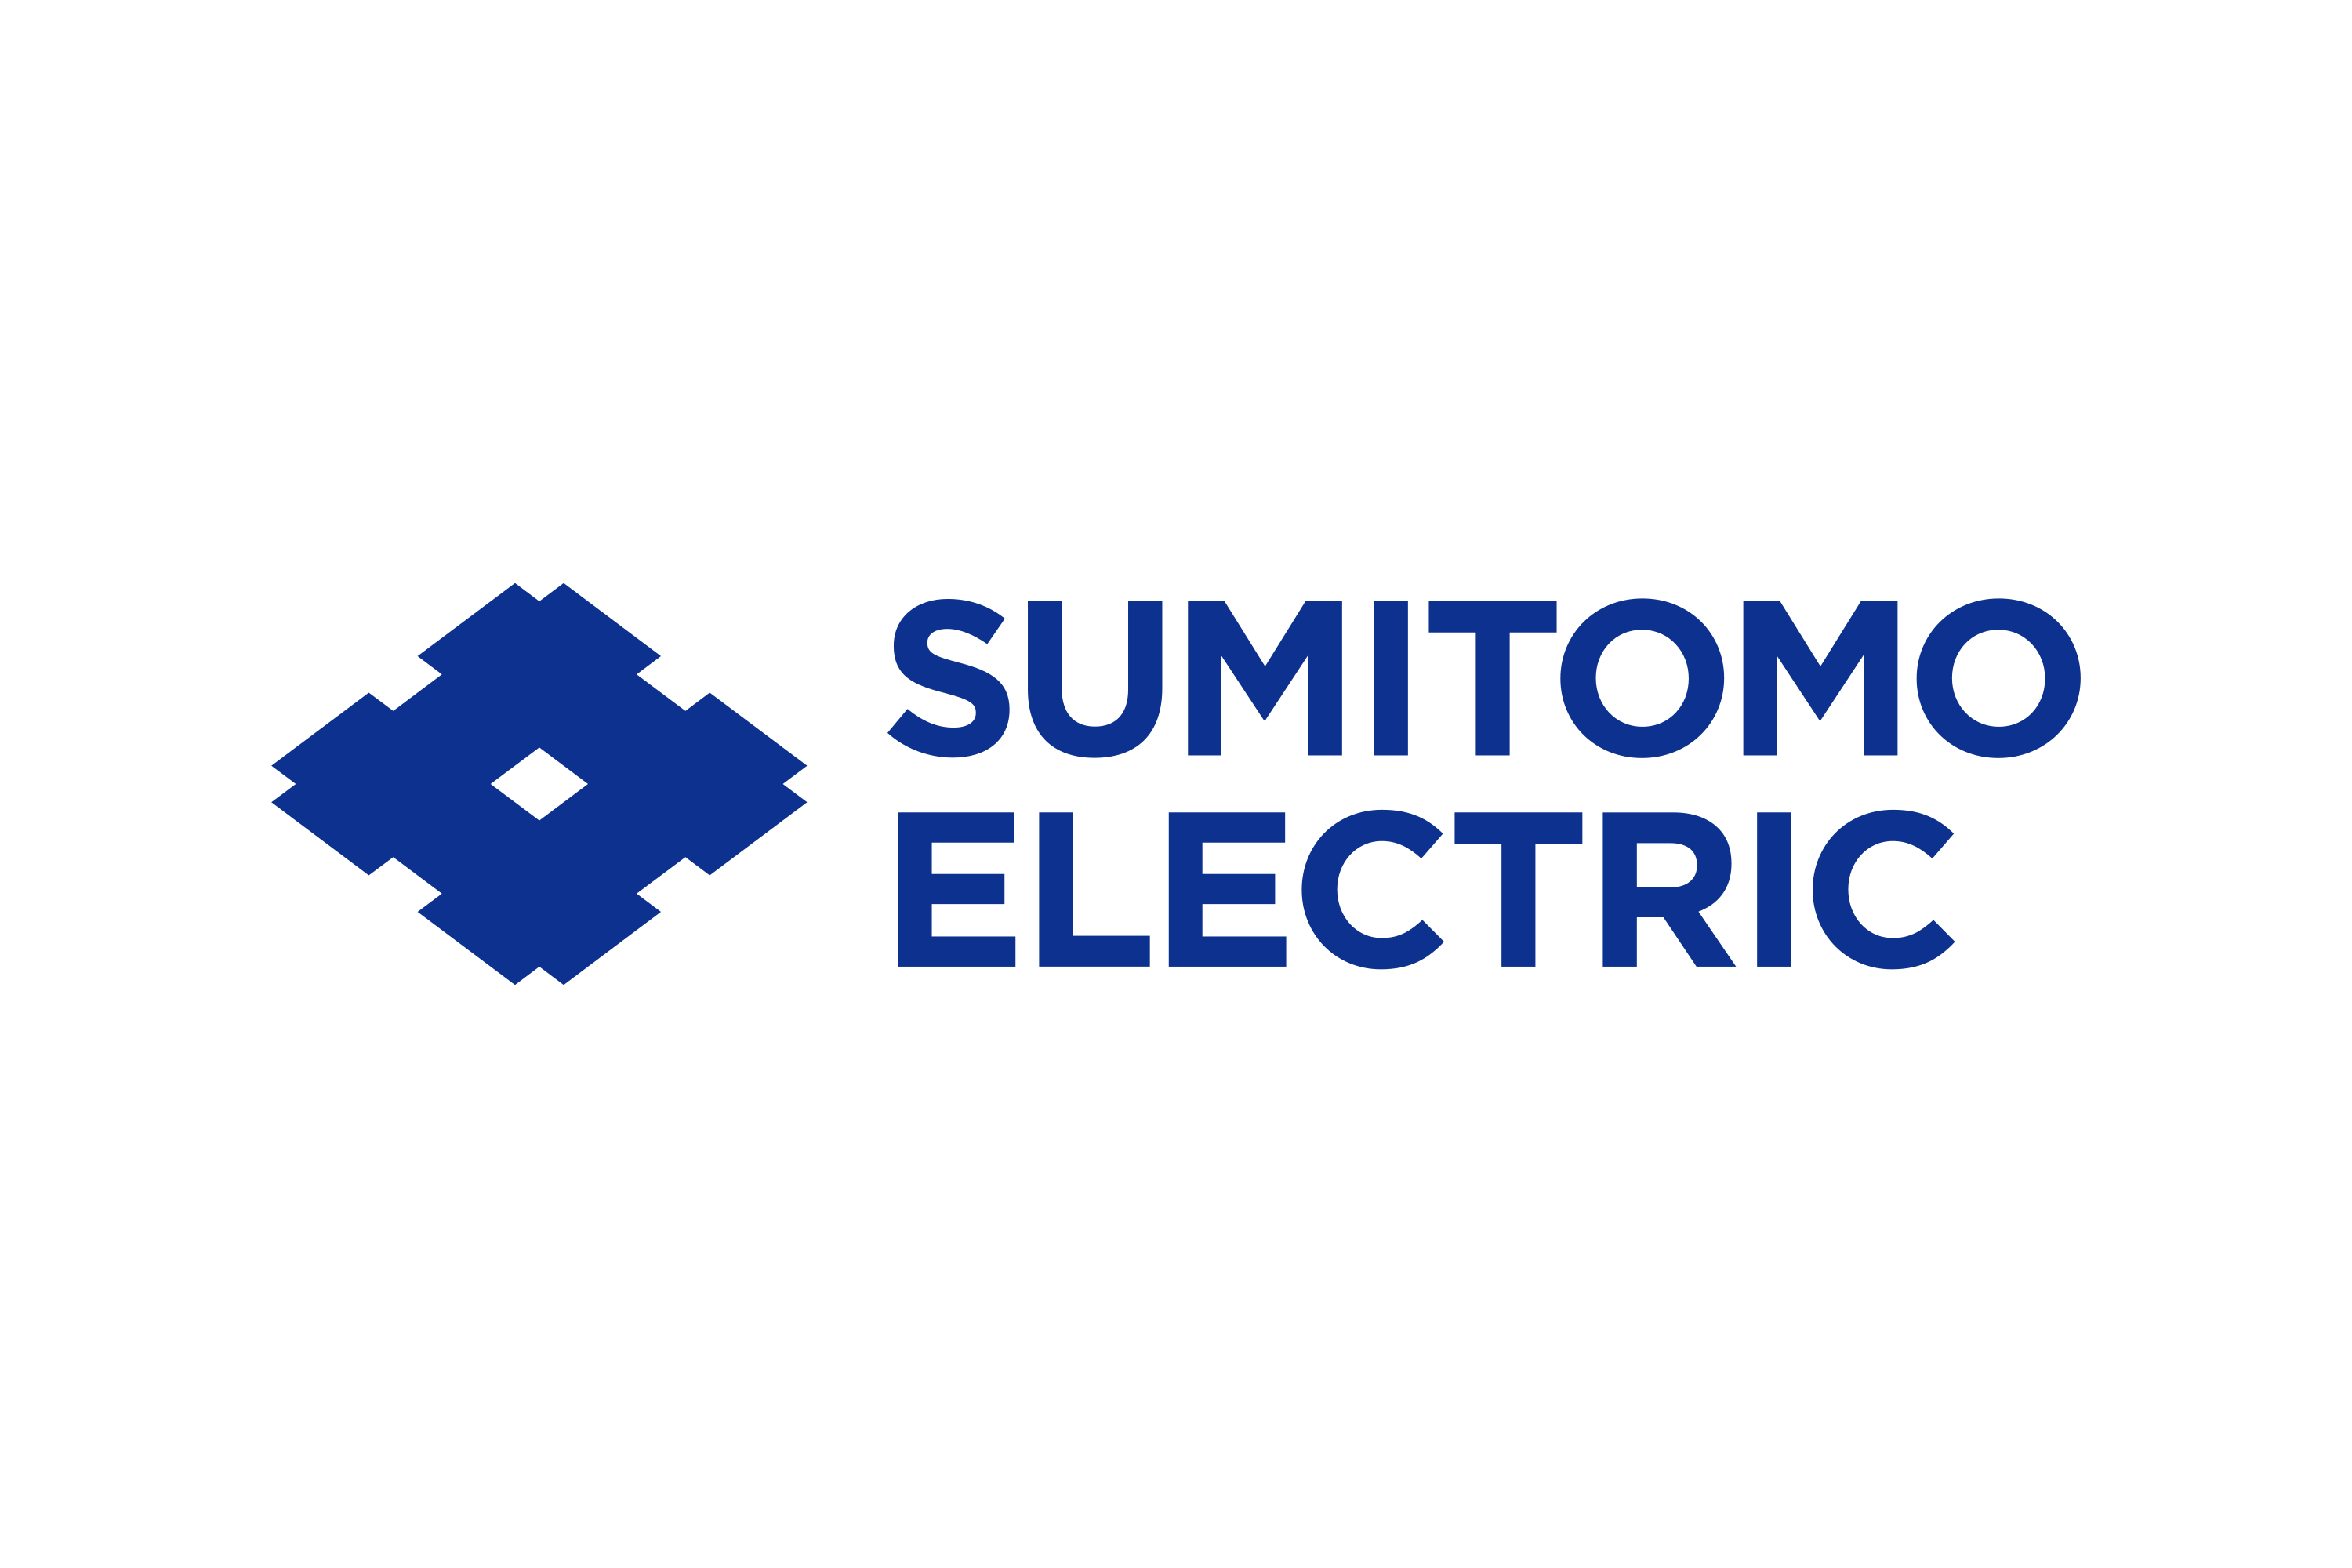 Sumitomo electric